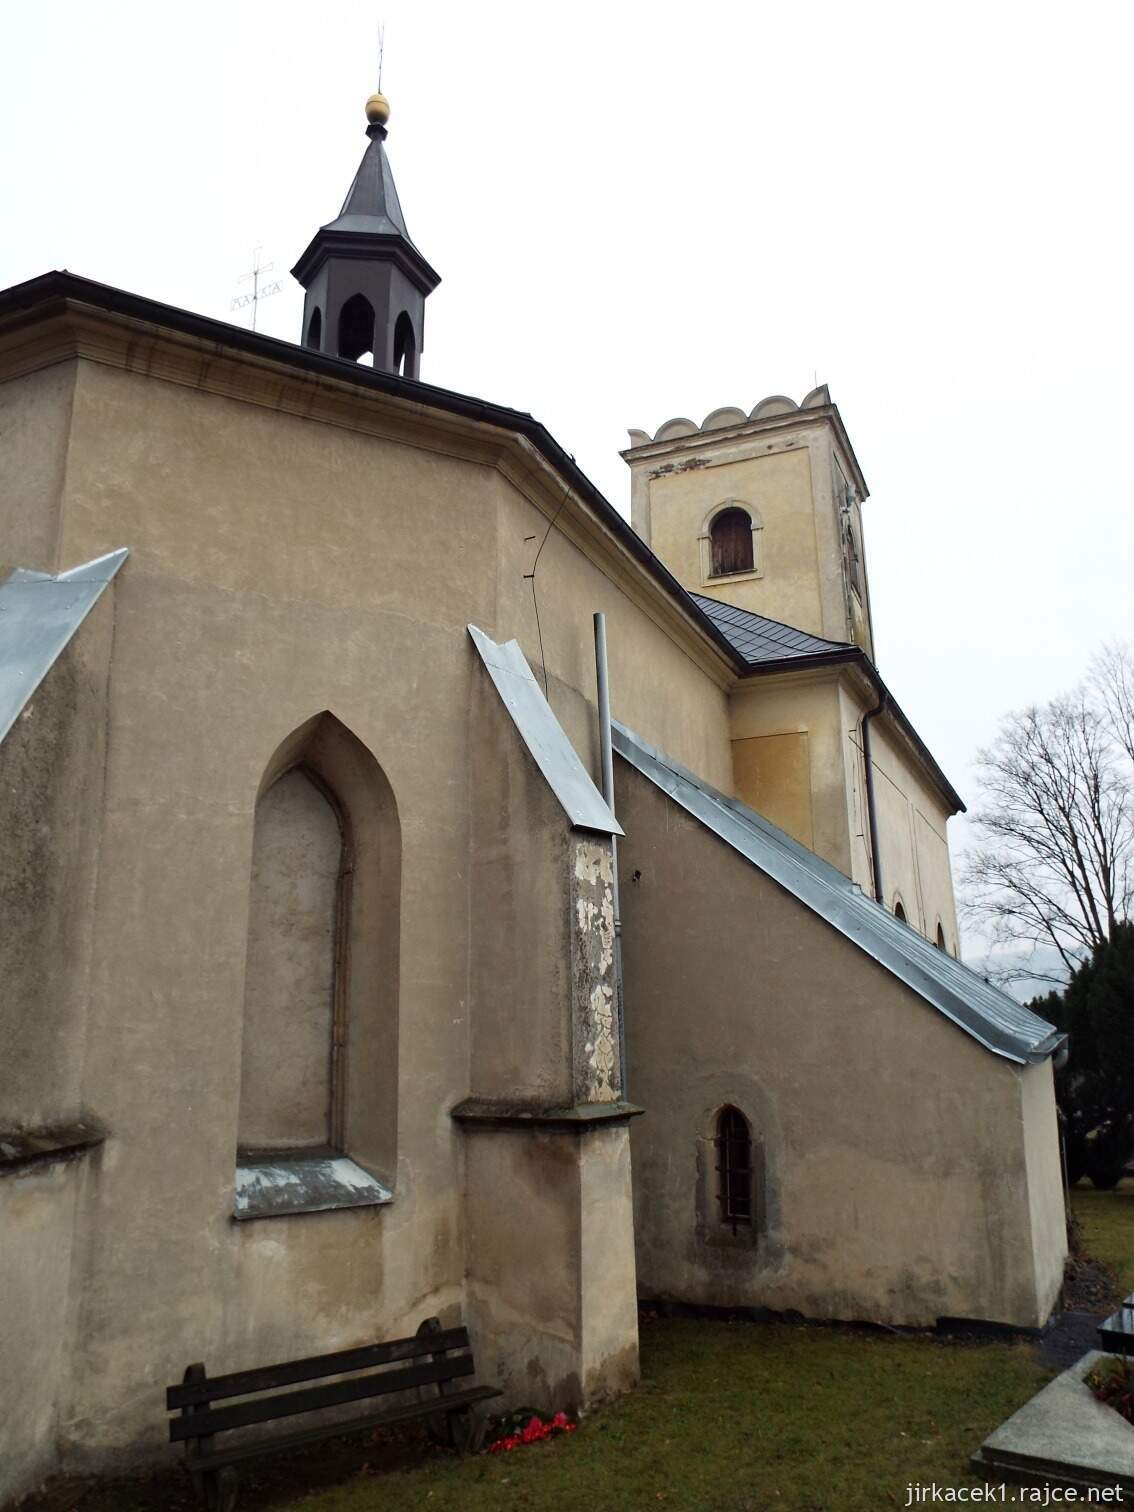 E - Fulnek - kostel Nanebevzetí Panny Marie v Jerlochovicíc​h 08 - zadní pohled